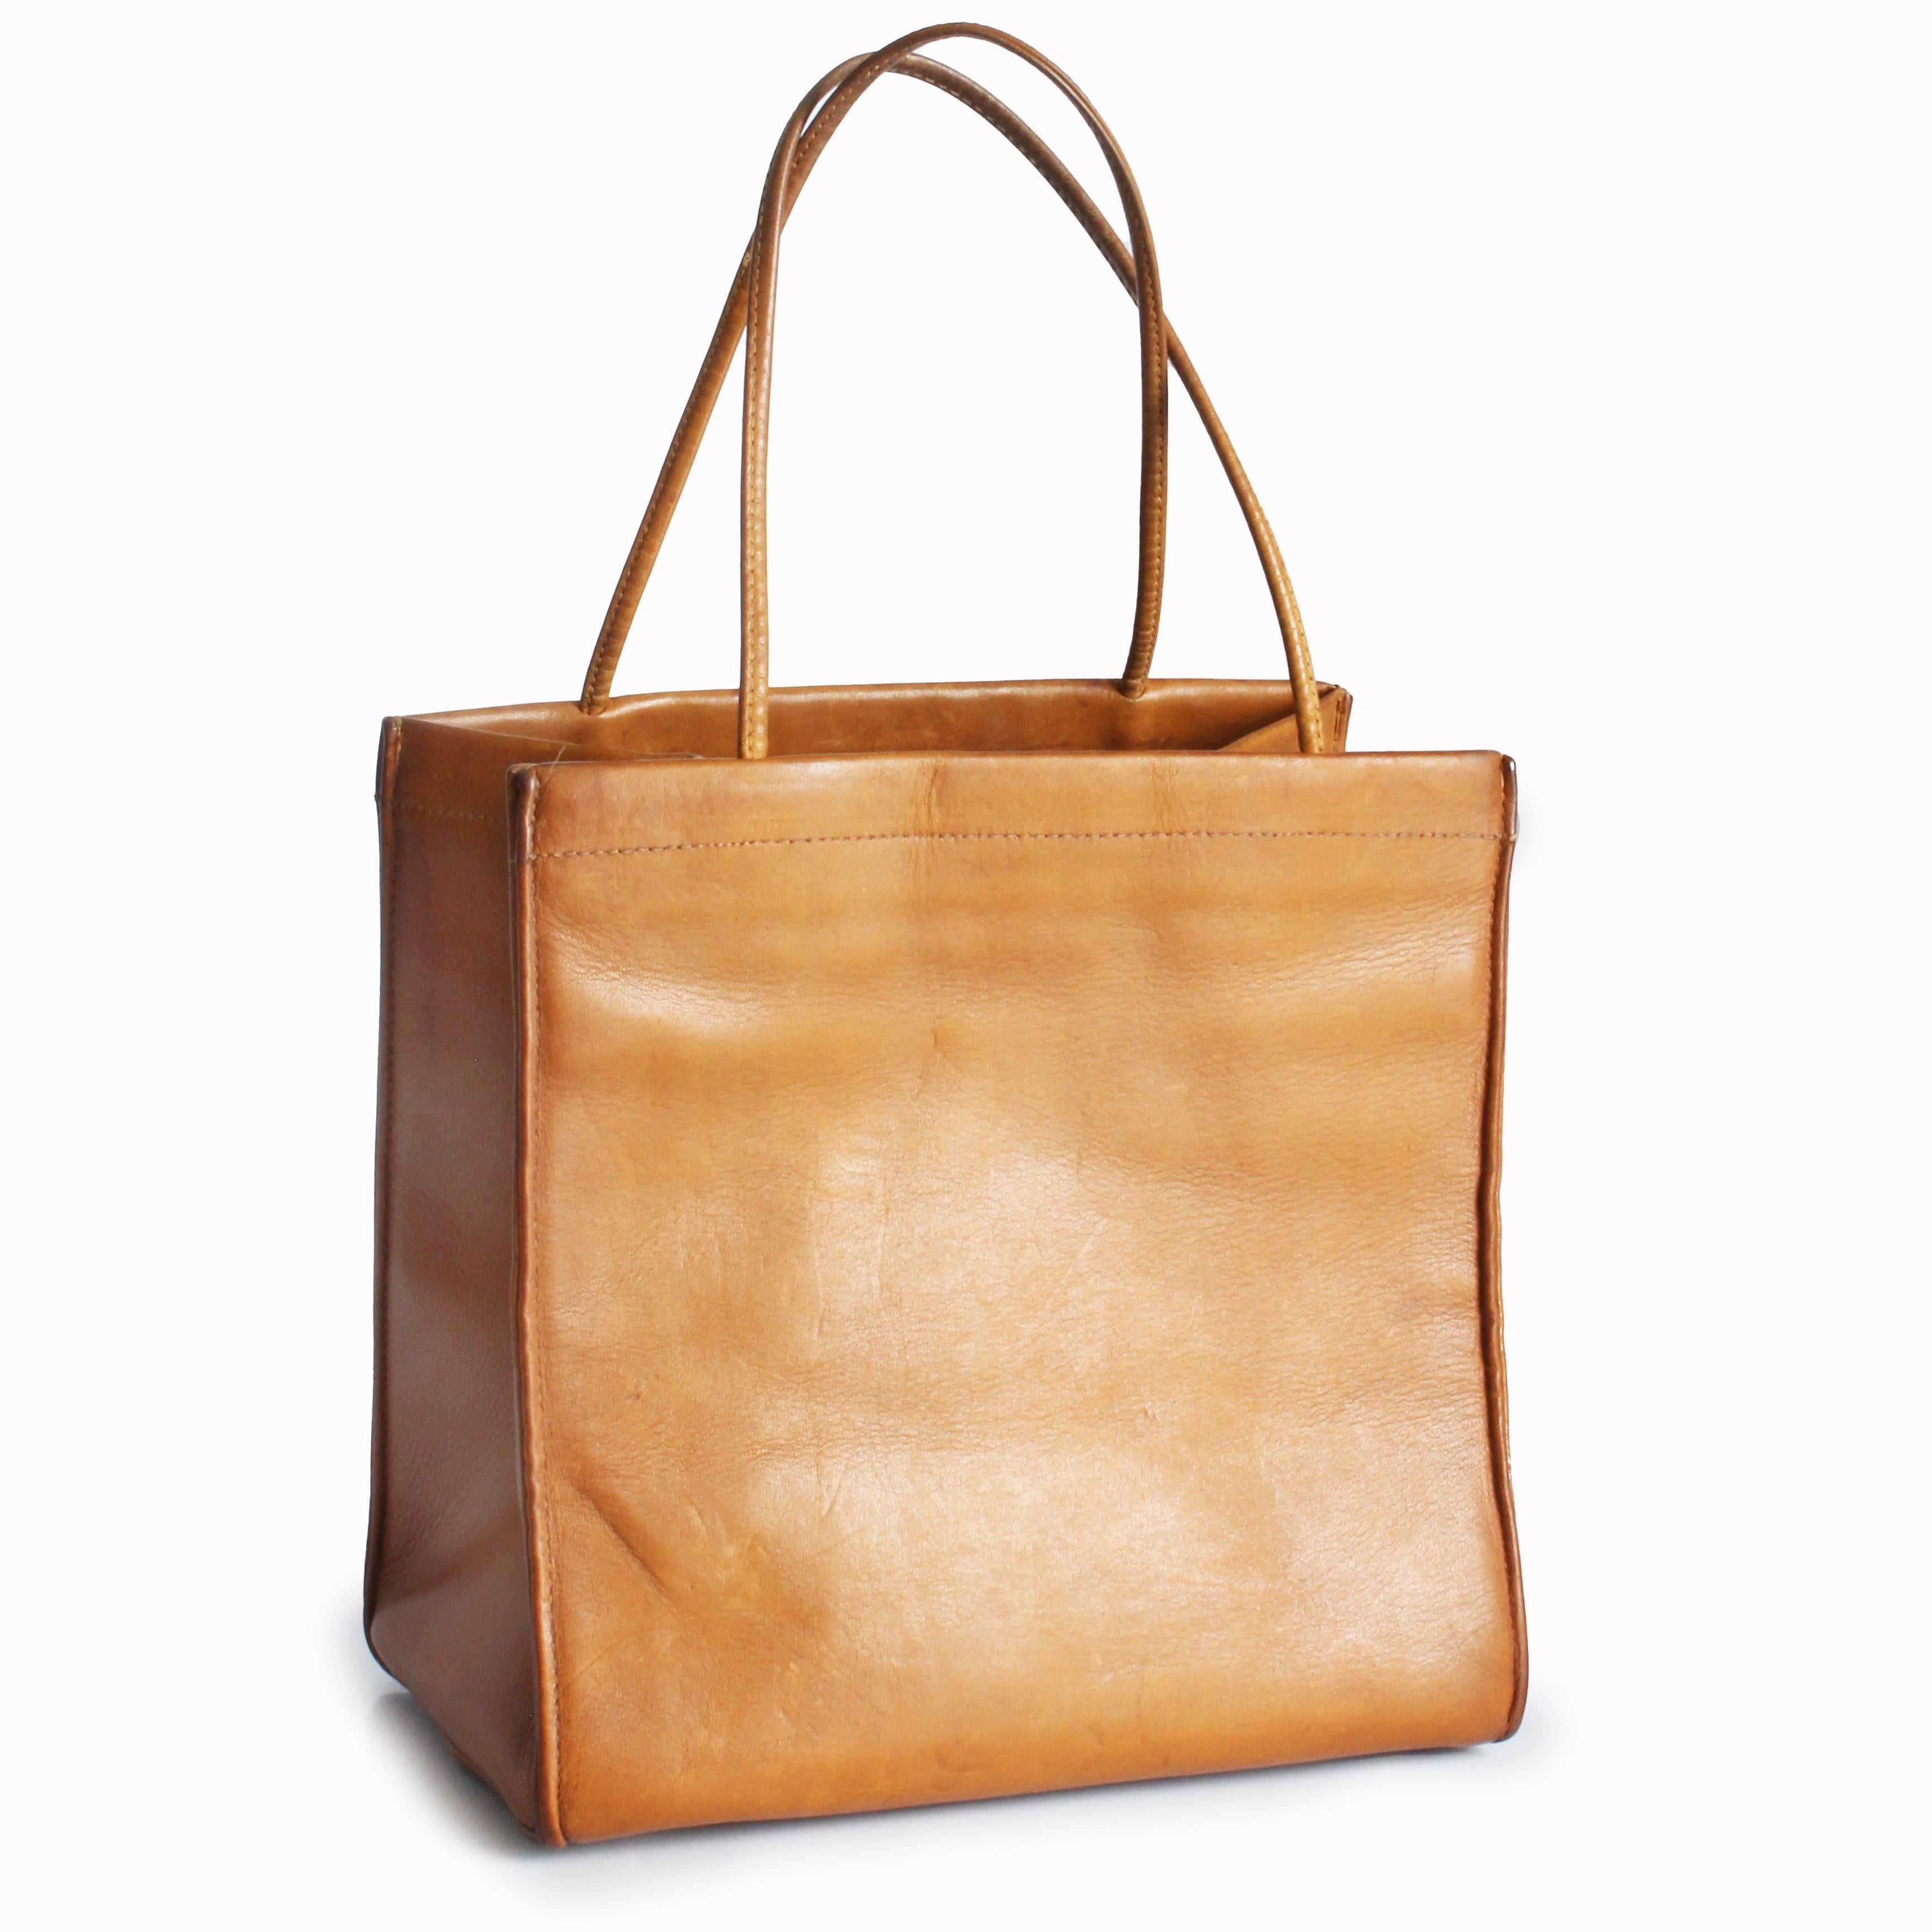 Gebrauchte, alte Bonnie Cashin for Coach 'Lunch Bag' Tasche, wahrscheinlich aus den 1960er Jahren.  Sie ist aus glattem, hellbraunem Trapezleder gefertigt, hat die Form einer Papiertüte und lässt sich zur Aufbewahrung flach zusammenfalten! Das